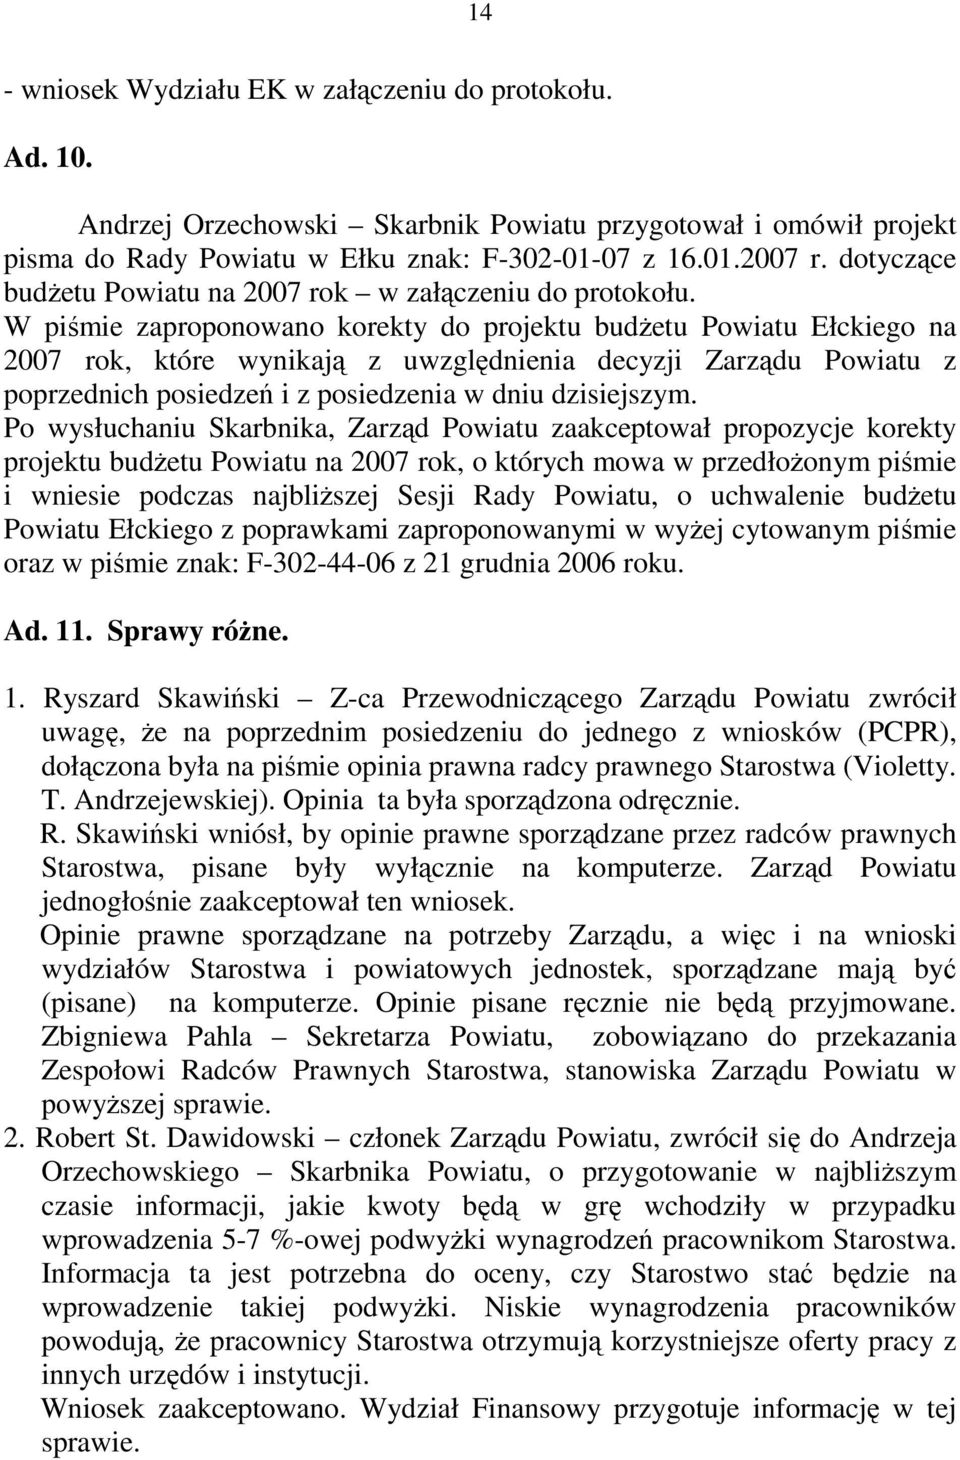 W piśmie zaproponowano korekty do projektu budżetu Powiatu Ełckiego na 2007 rok, które wynikają z uwzględnienia decyzji Zarządu Powiatu z poprzednich posiedzeń i z posiedzenia w dniu dzisiejszym.